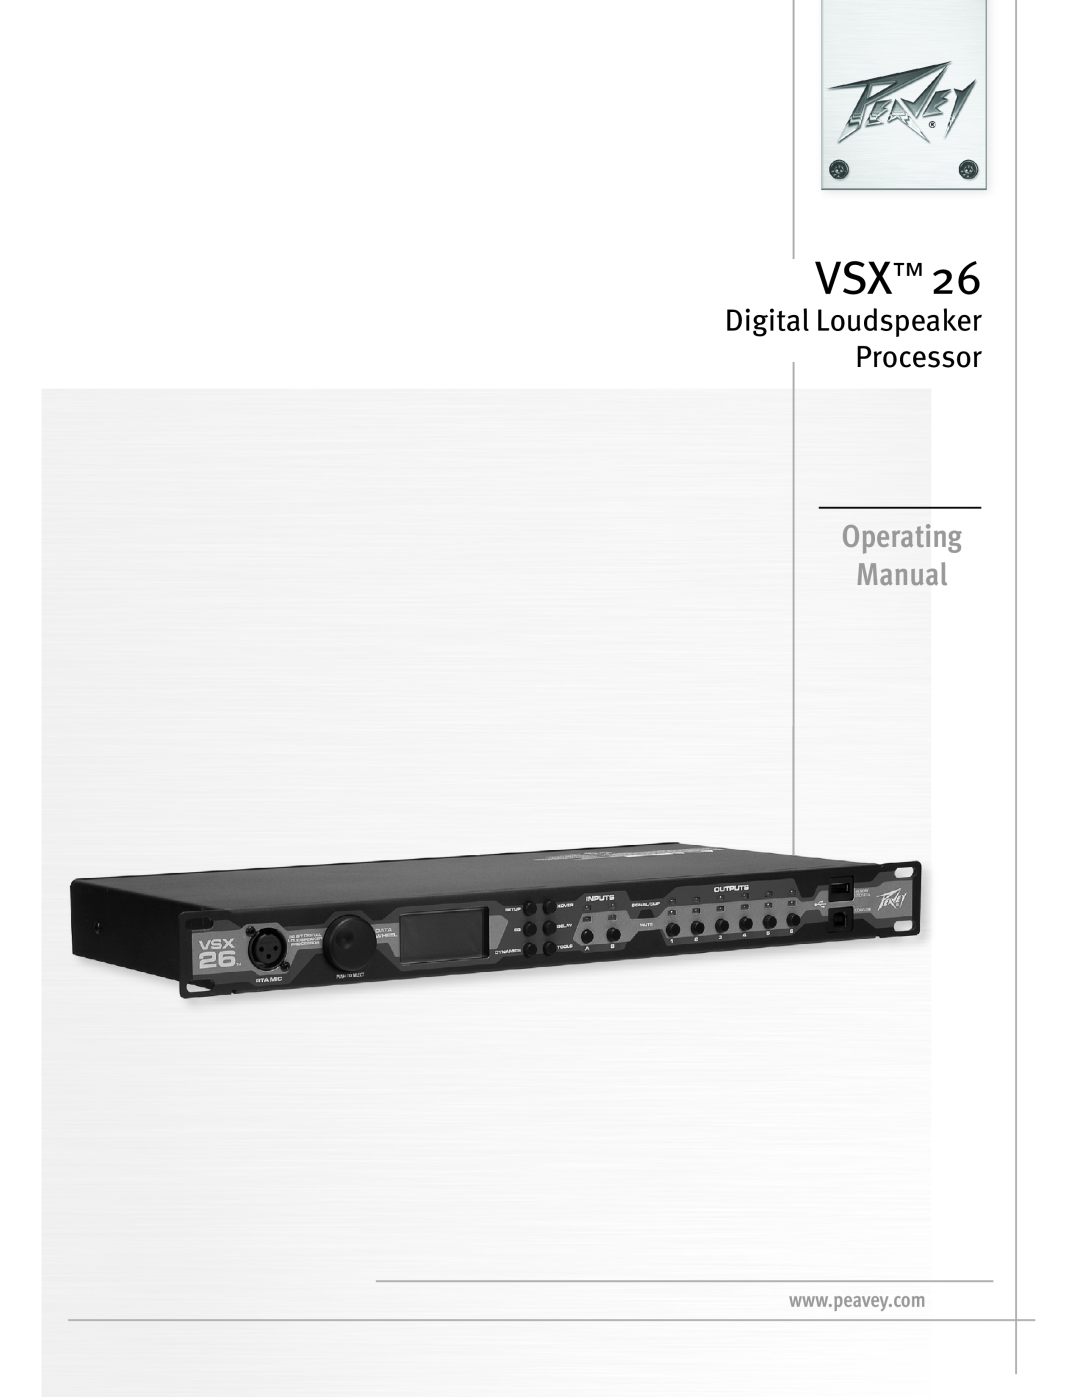 Peavey VSX 26 manual Operating Manual, Digital Loudspeaker Processor 